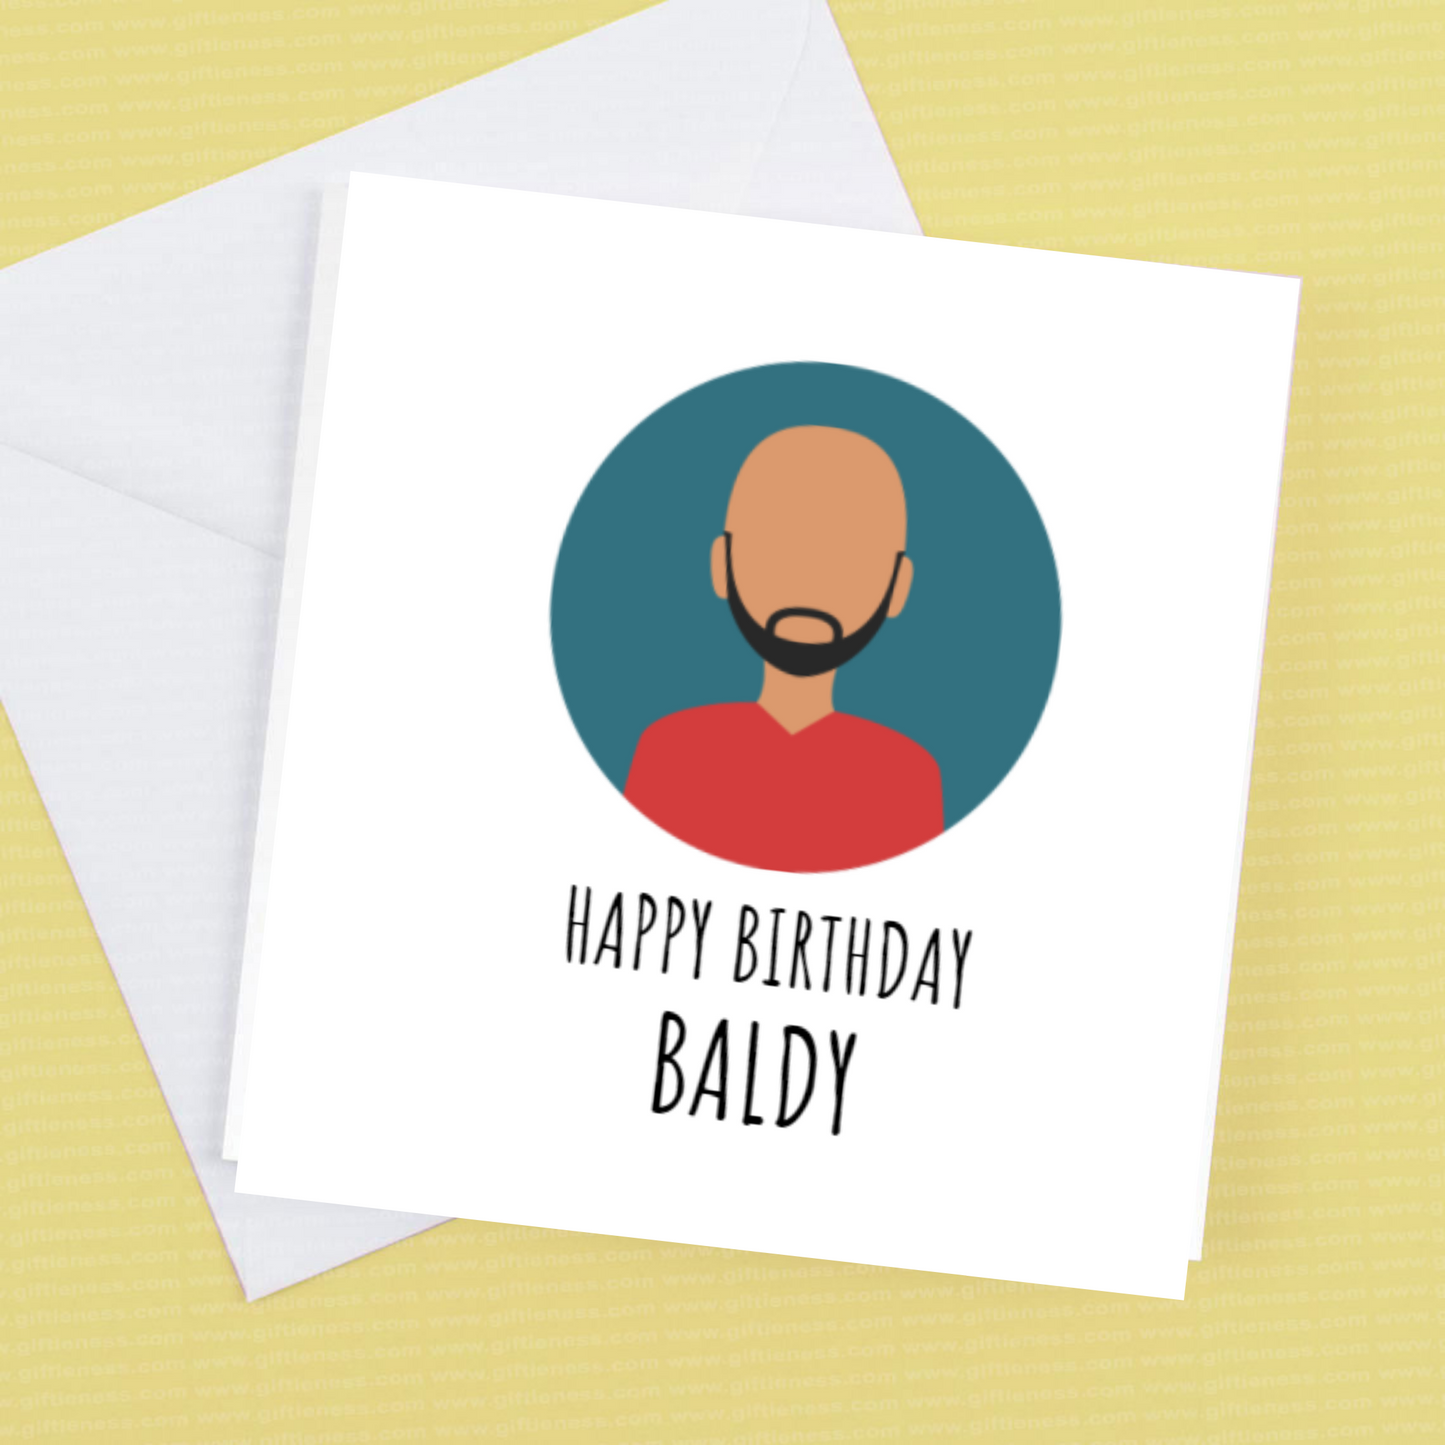 Happy Birthday Baldy